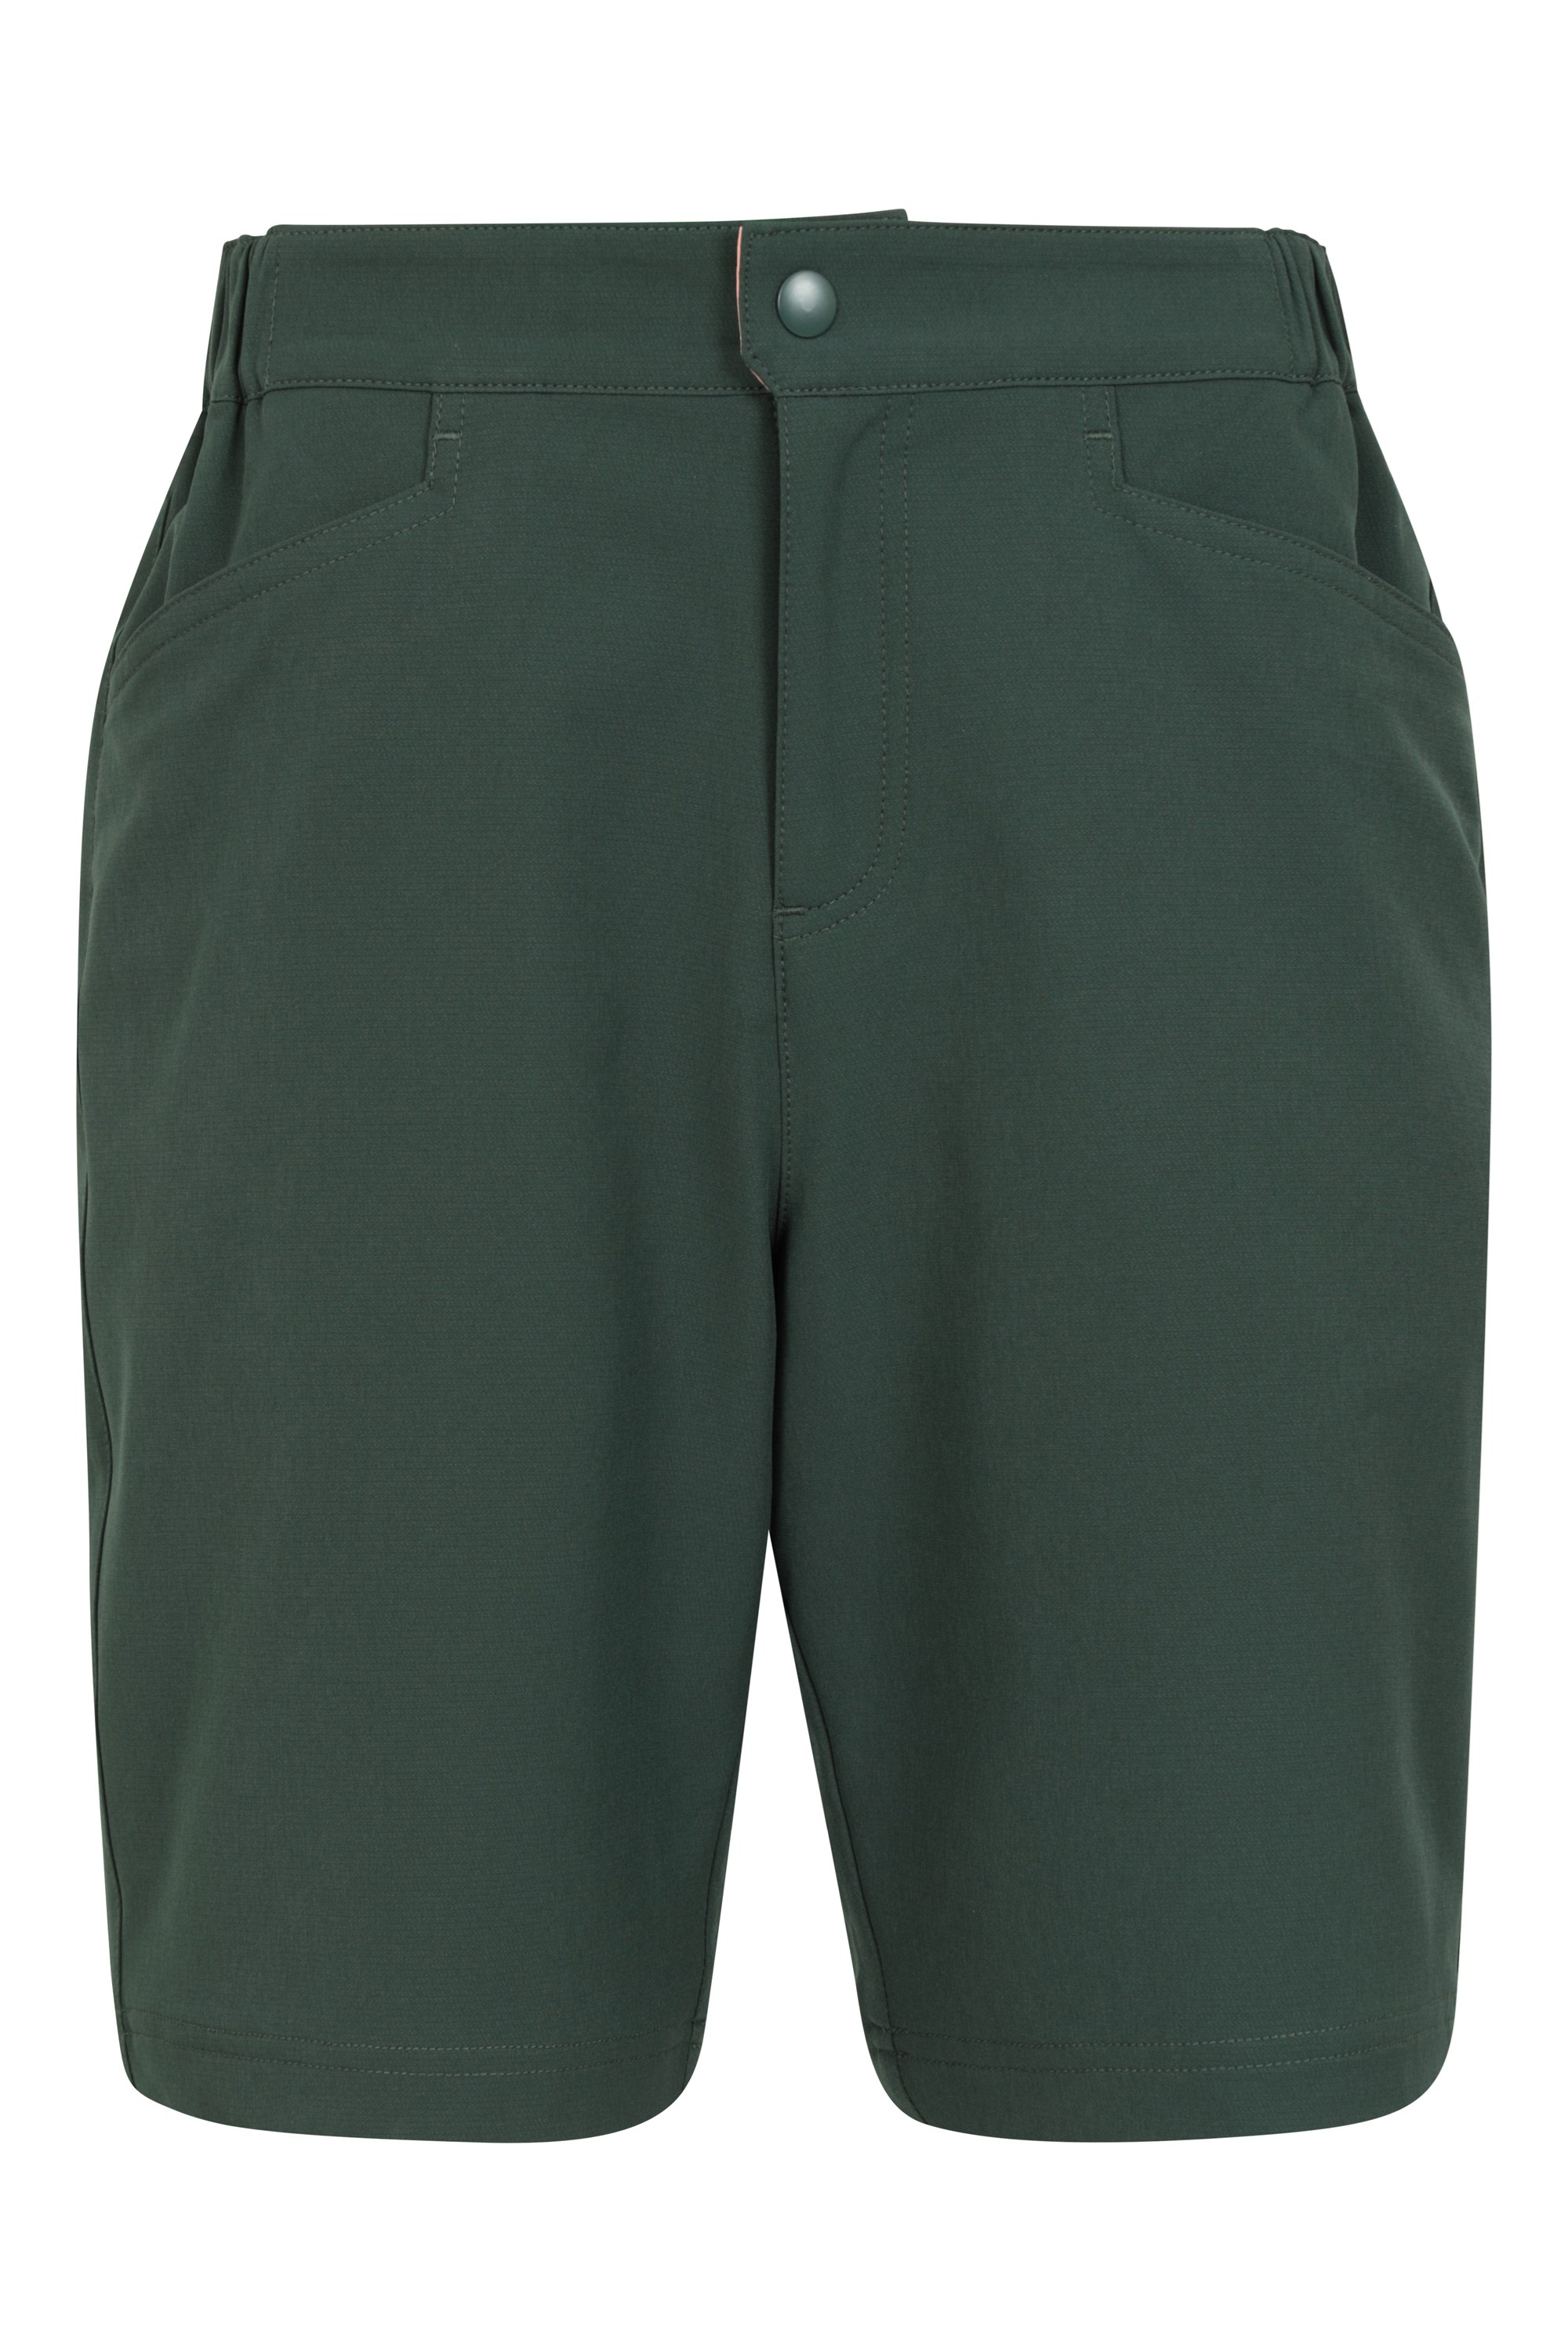 Steve Backshall Pursuit Womens Shorts - Green